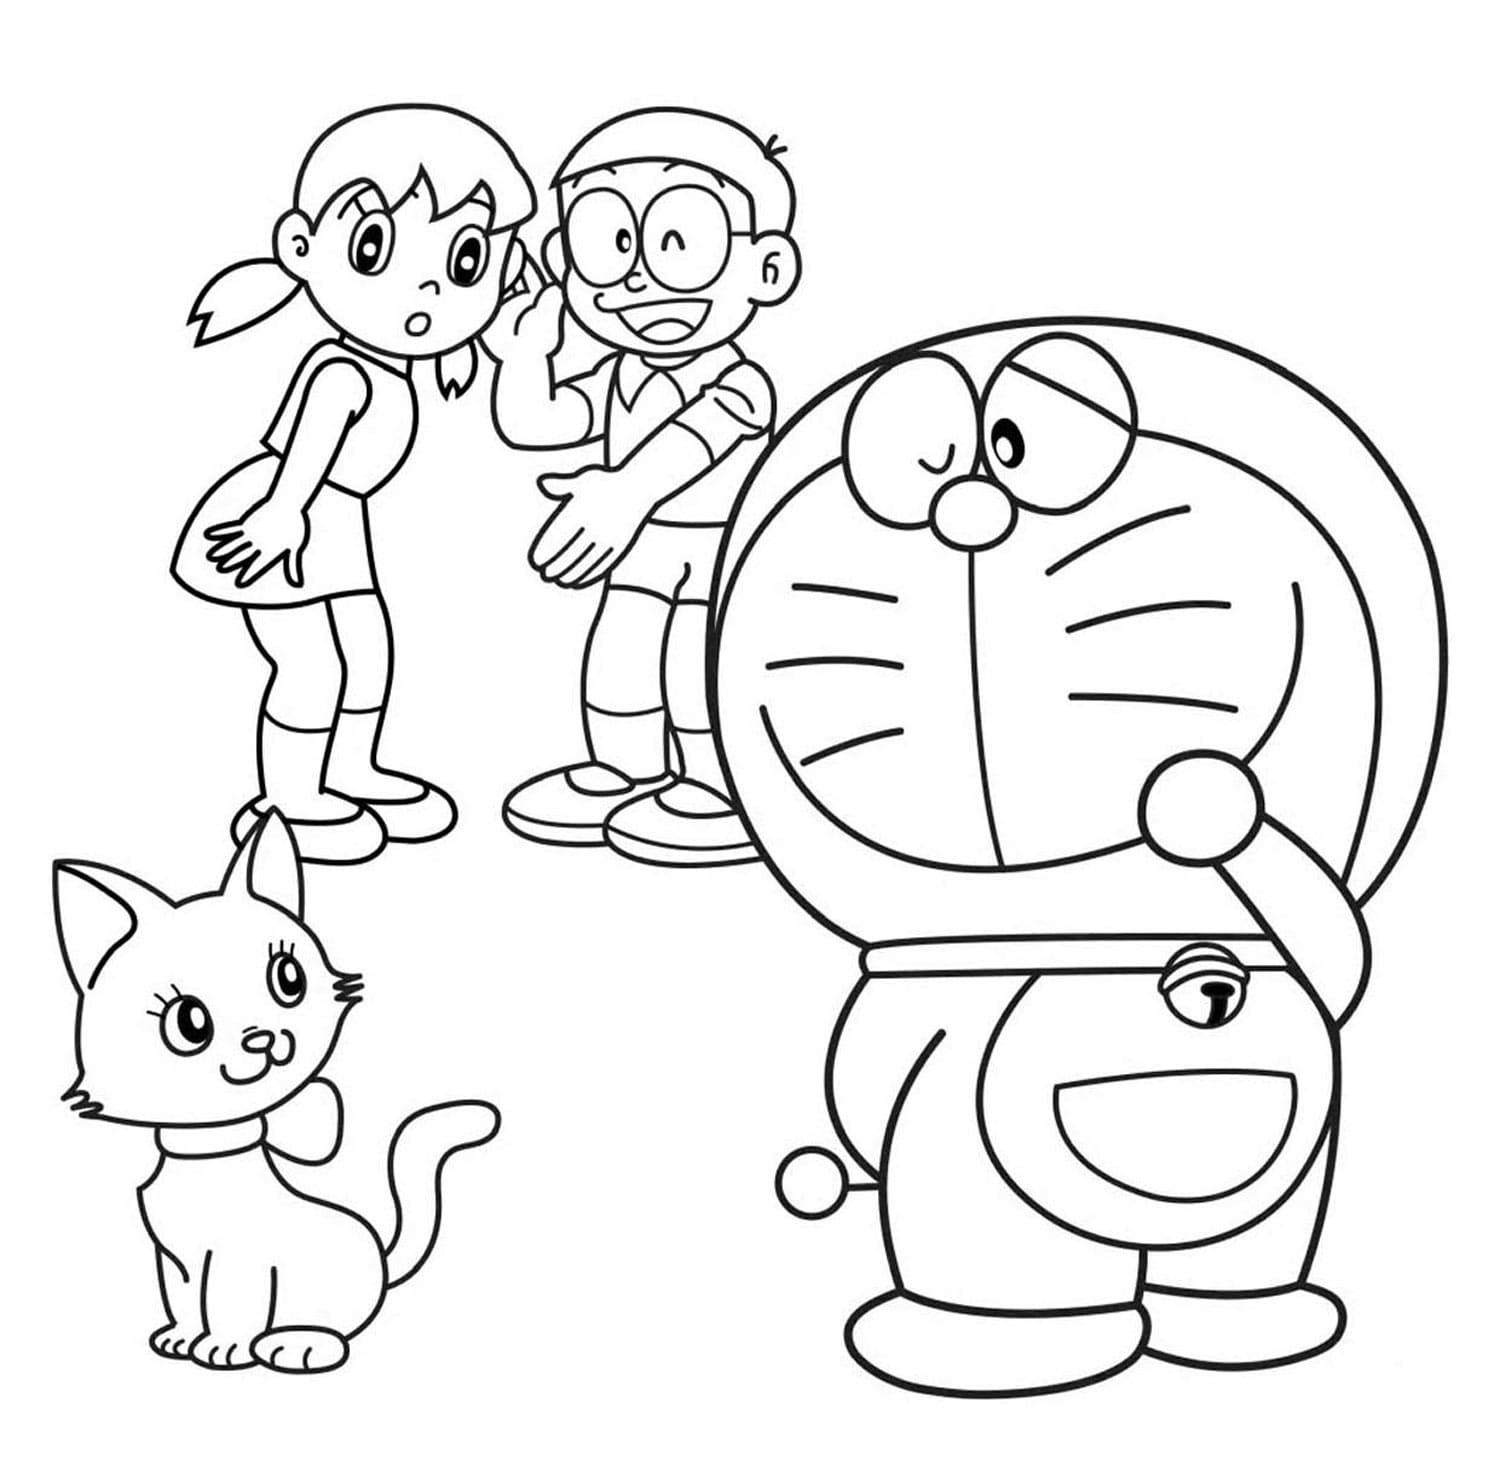 Doraemon Coloring Pages: Chào mừng các bạn đến với thế giới màu sắc với những trang tô màu Doraemon đáng yêu và vui nhộn. Hình ảnh liên quan đến trang tô màu Doraemon đang chờ đón các bạn. Hãy tải về và bắt đầu trang trí cho Doraemon và những người bạn với những màu sắc yêu thích của bạn.